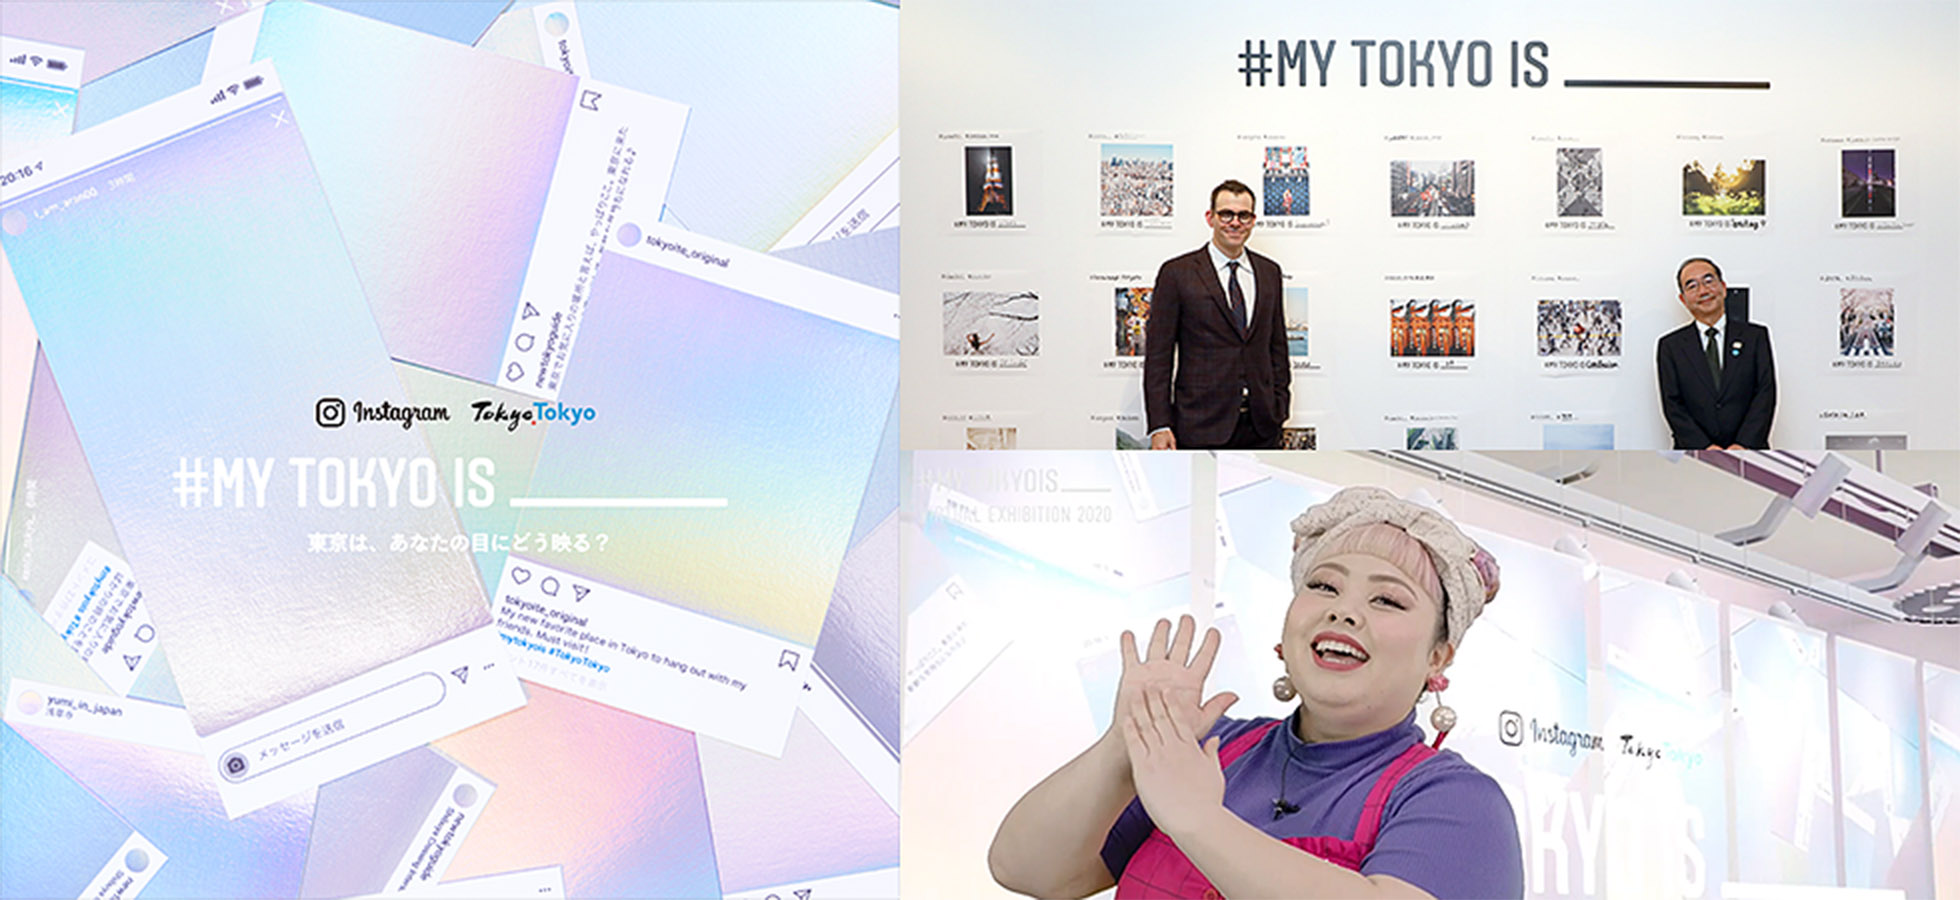 東京都とInstagramの共同キャンペーン「#MY TOKYO IS _____」 キービジュアル